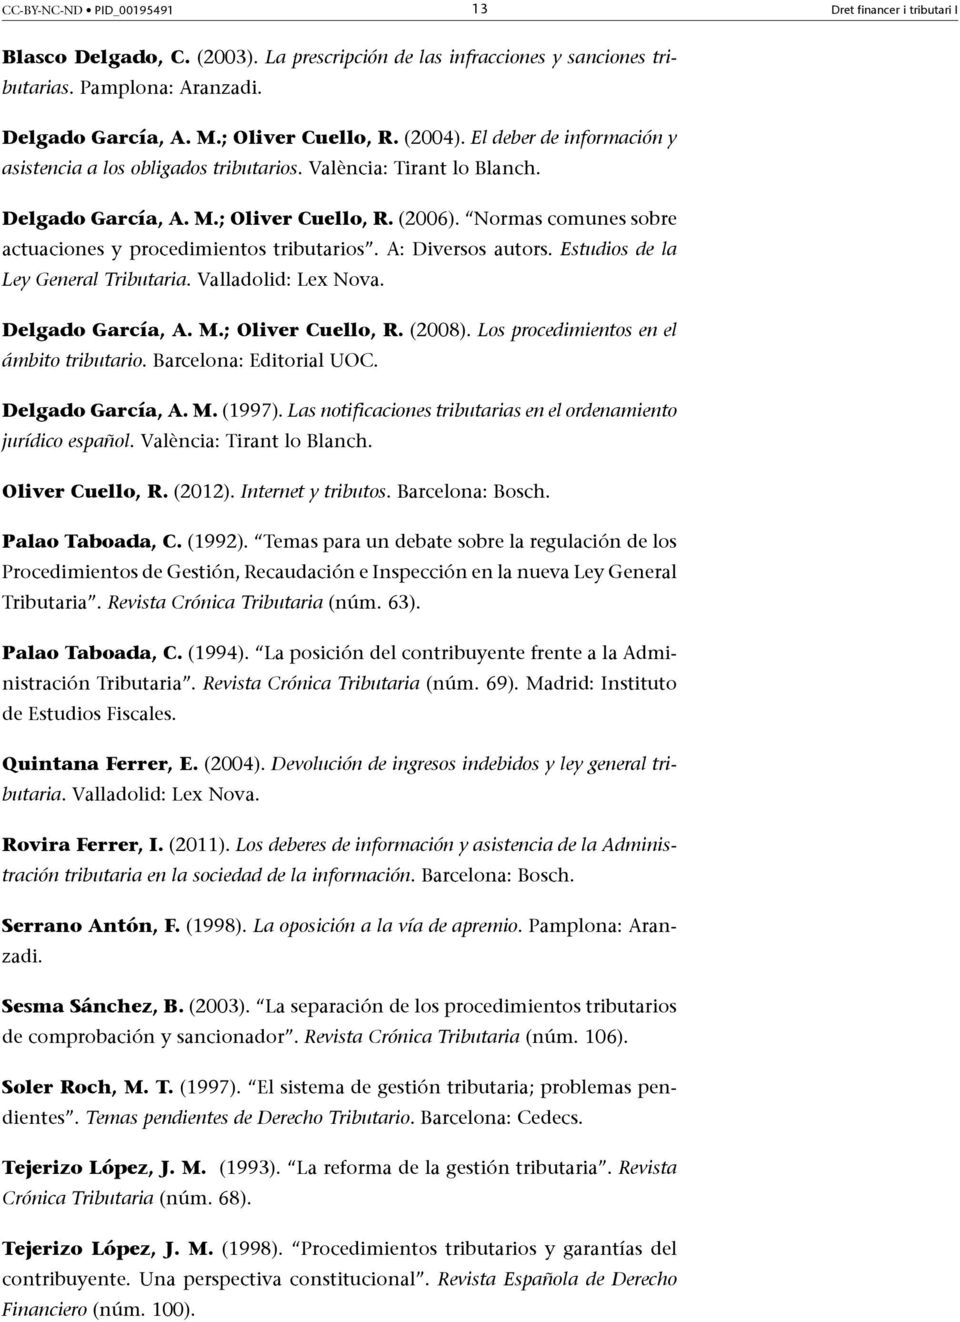 Normas comunes sobre actuaciones y procedimientos tributarios. A: Diversos autors. Estudios de la Ley General Tributaria. Valladolid: Lex Nova. Delgado García, A. M.; Oliver Cuello, R. (2008).